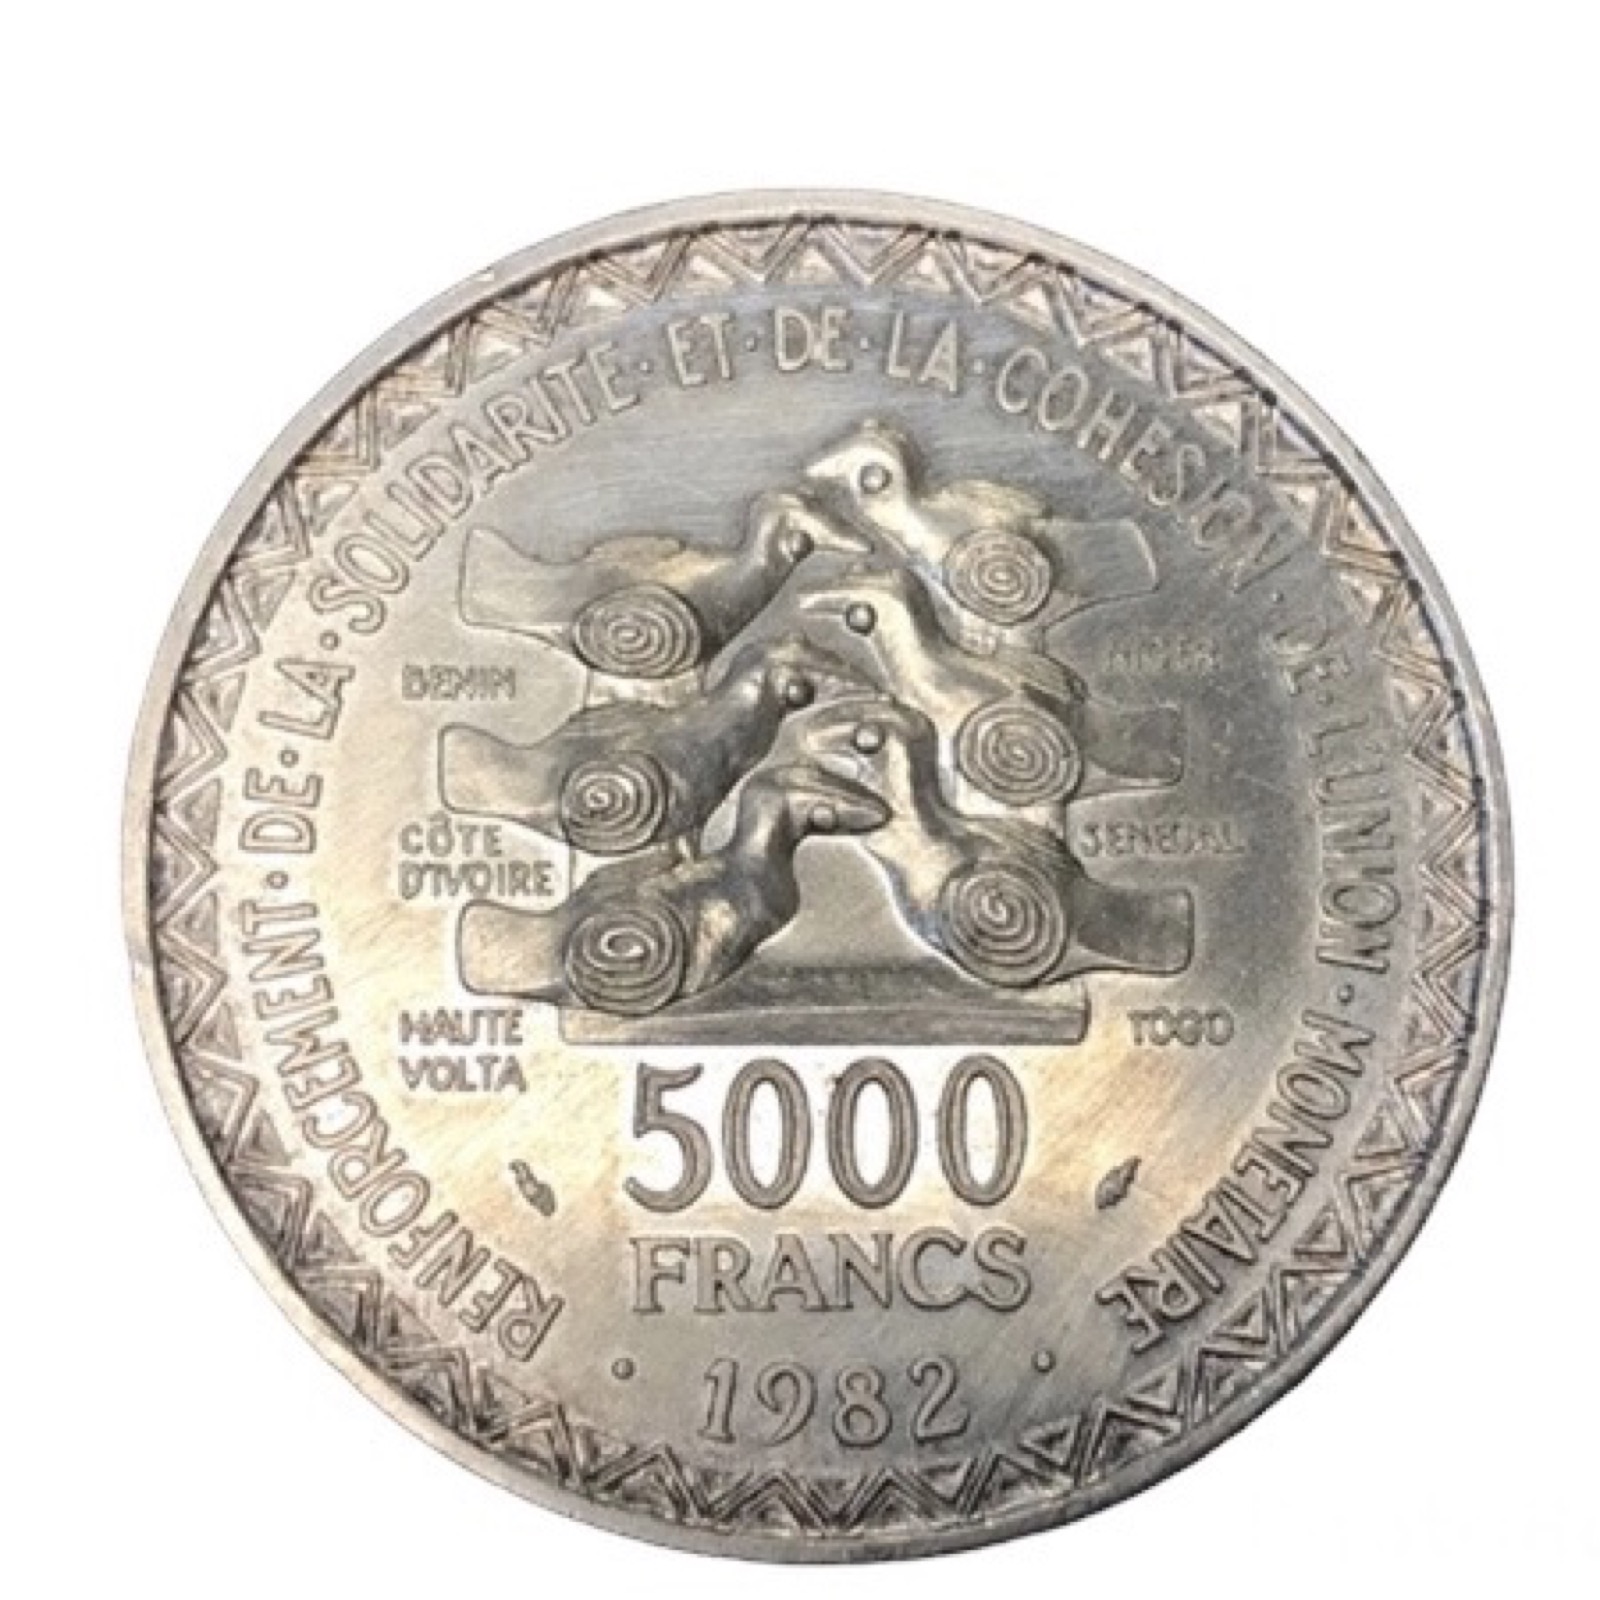 5000 Francs Union Monétaire 1982